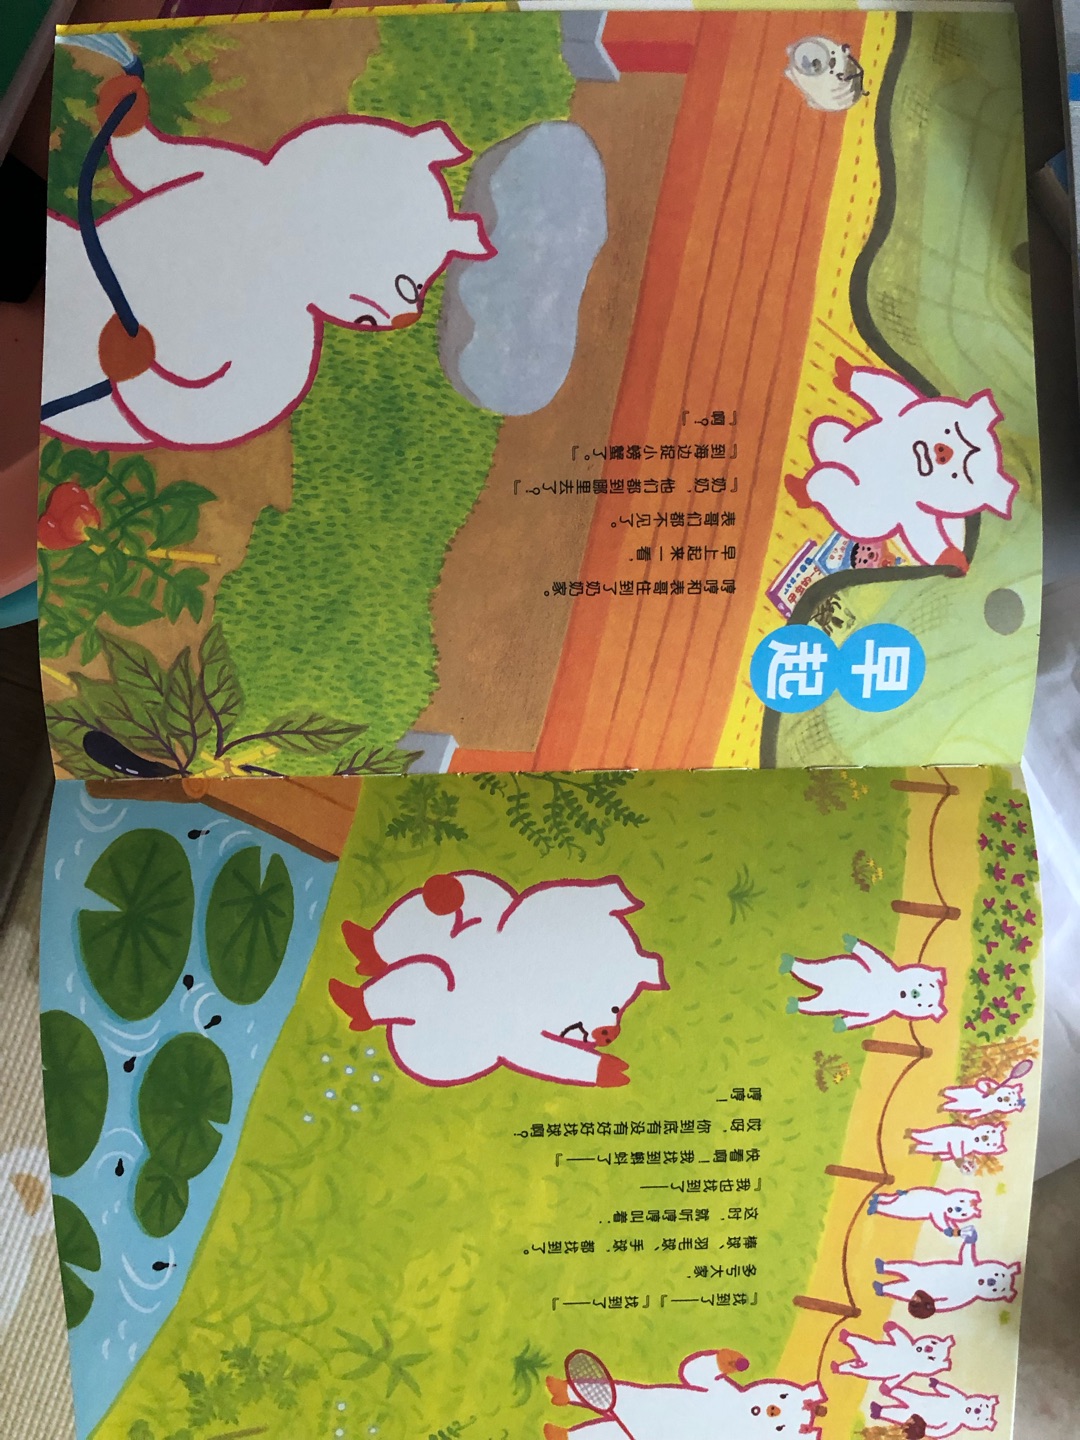 书的故事情节不错，原汁原味的日本本土风格，就是排版感觉不太合理